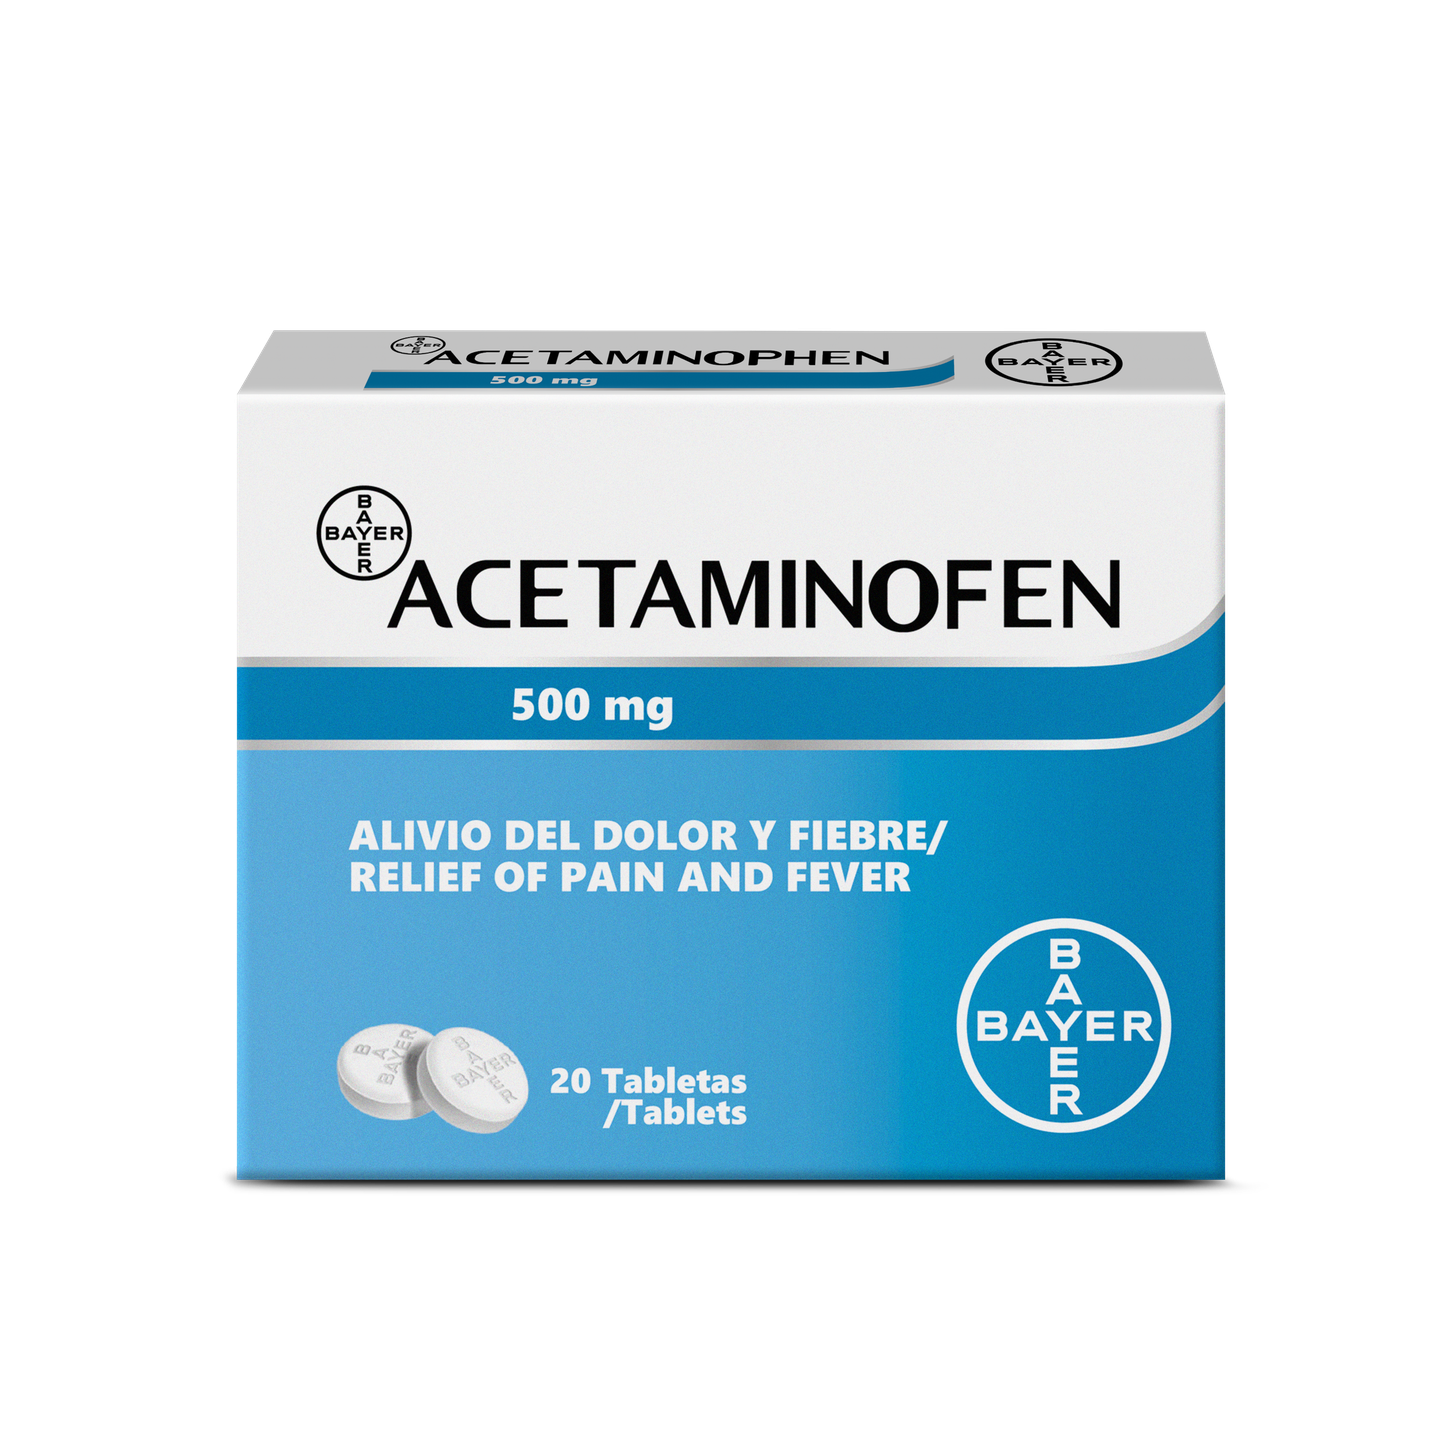 El laboratorio alemán Bayer lanza al mercado por primera vez en su historia el acetaminofén en pastillas